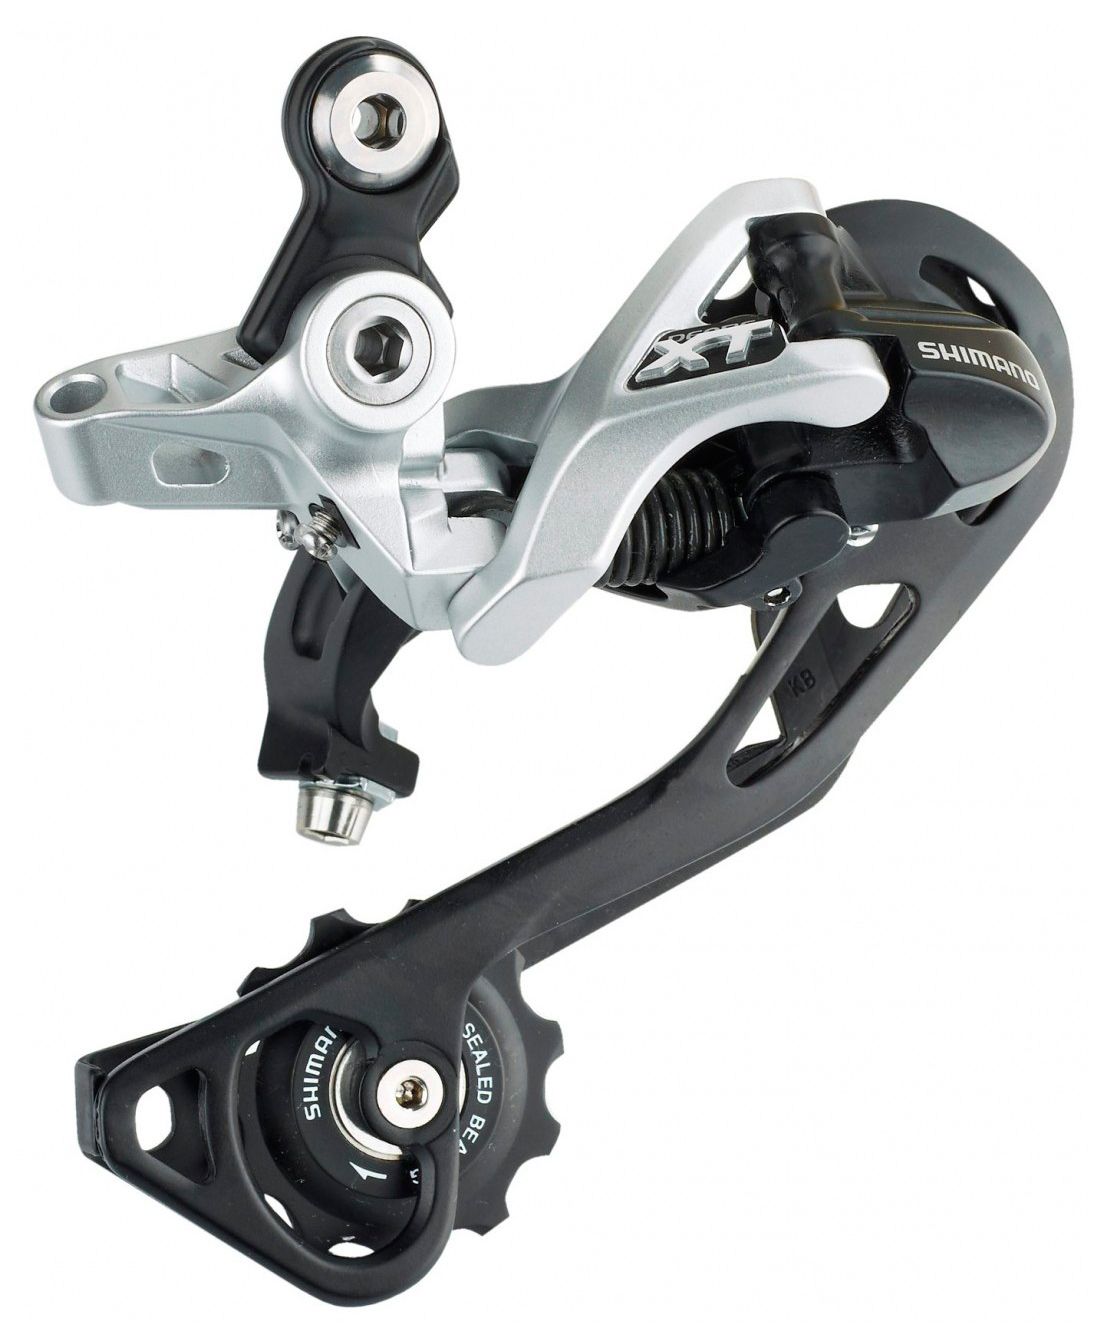  Переключатель задний для велосипеда Shimano XT M781, SGS, 10 ск.